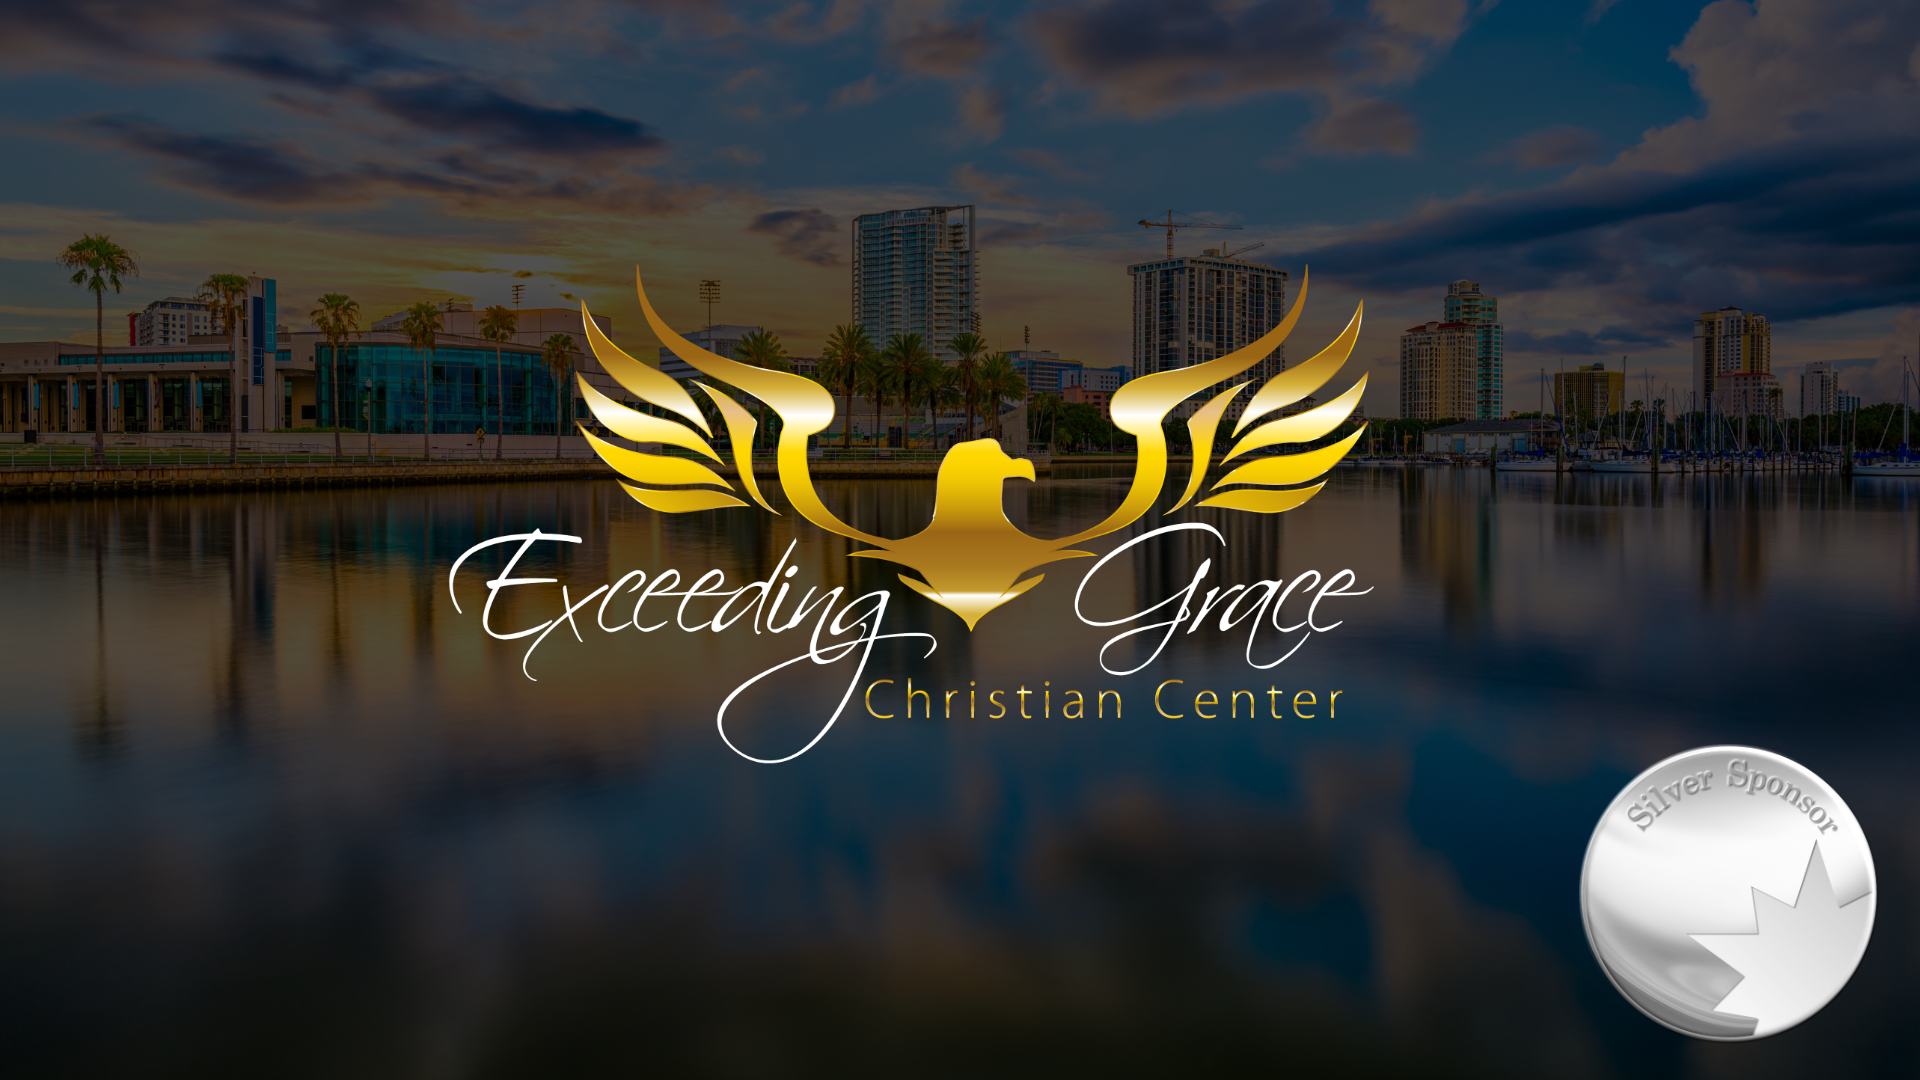 Exceeding Grace Christian Center Sponsor